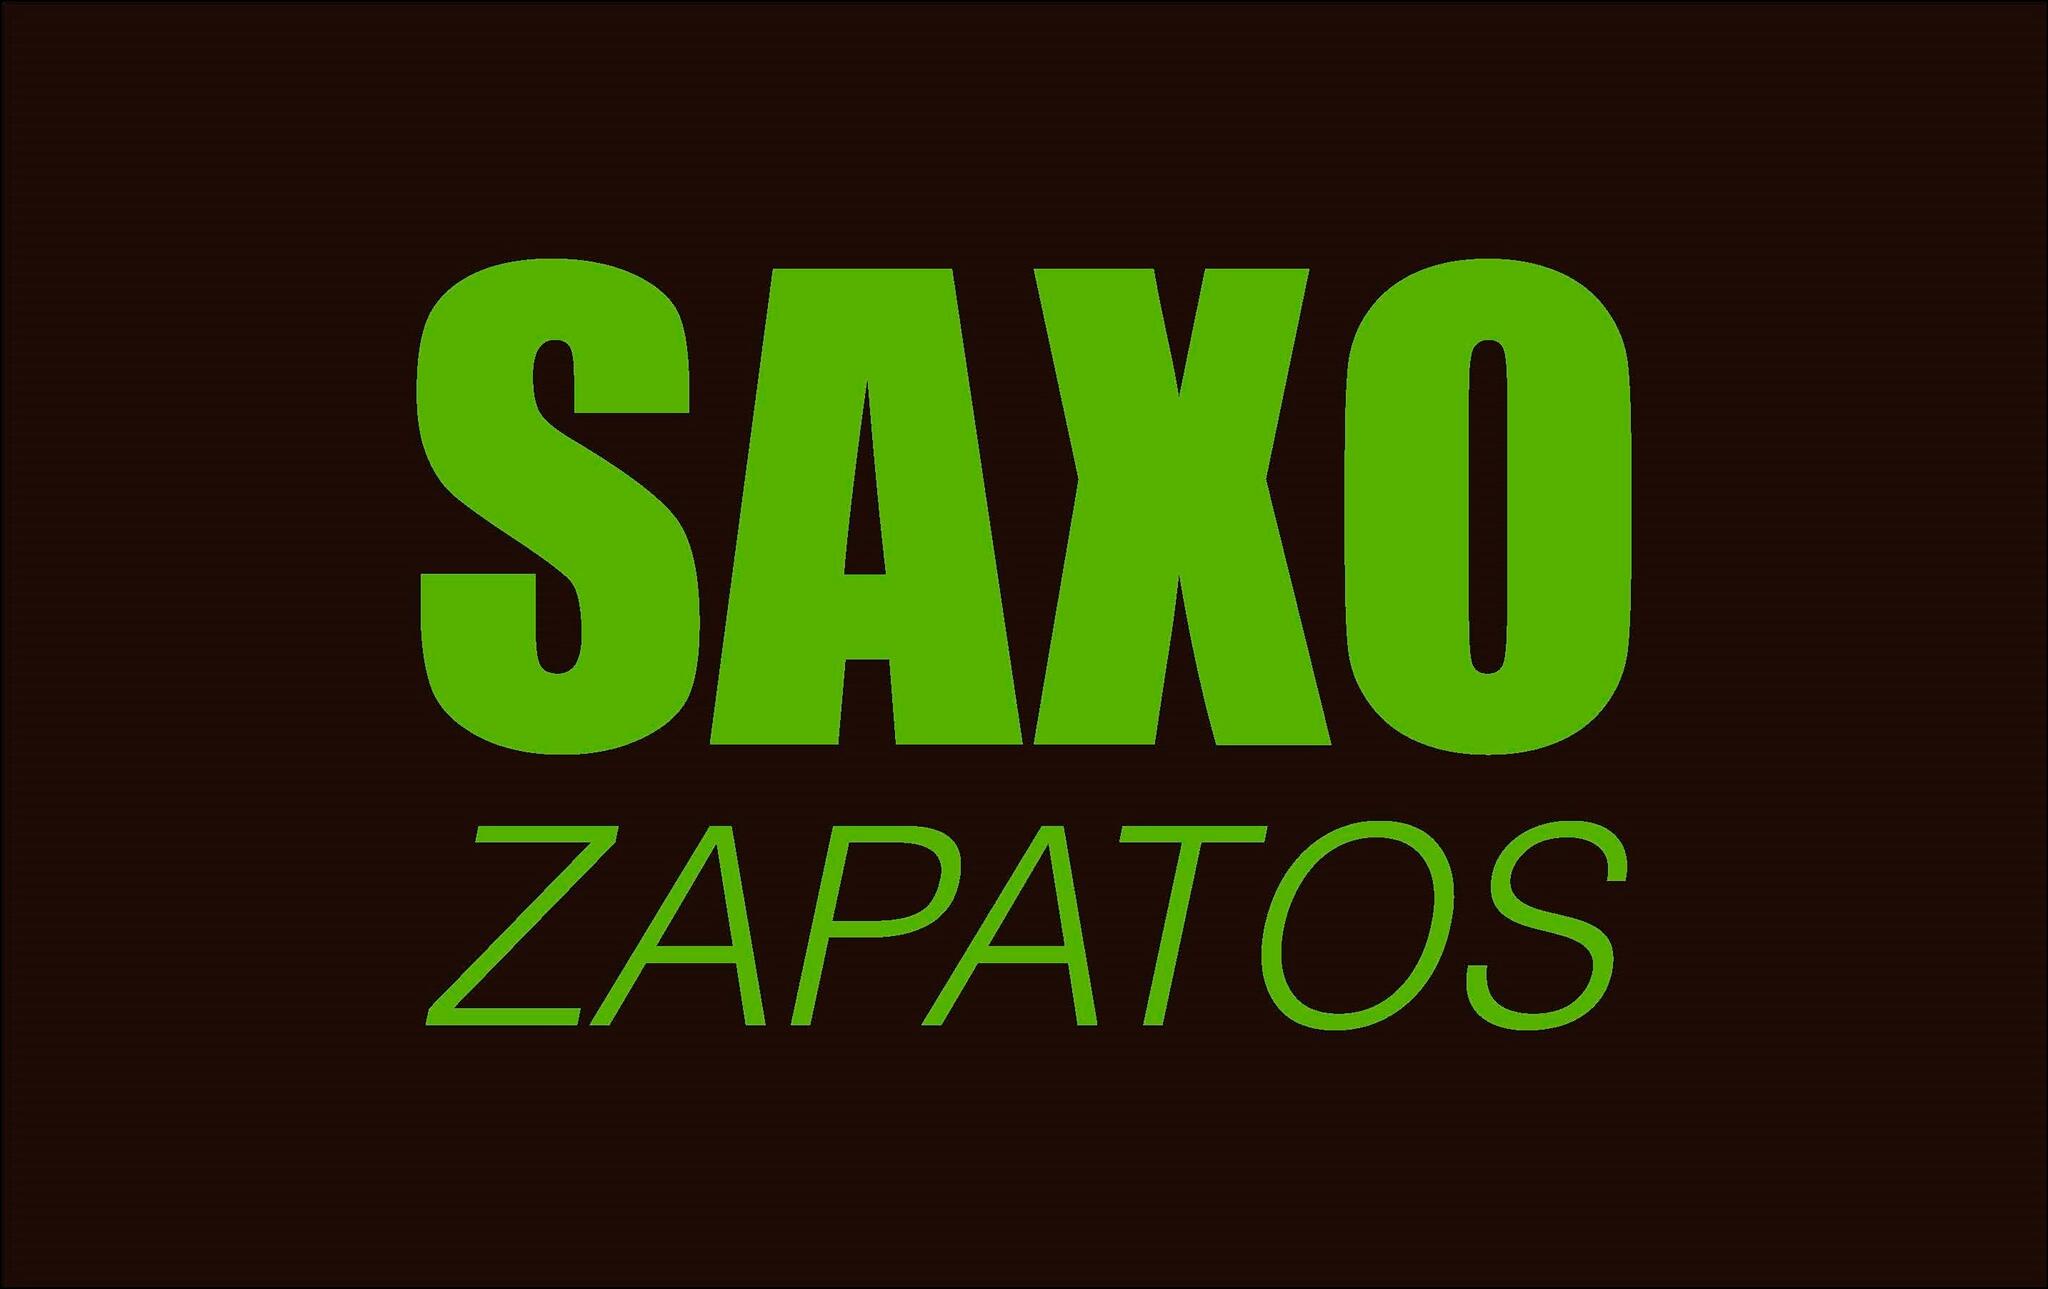 Saxo Zapatos - Nextdoor